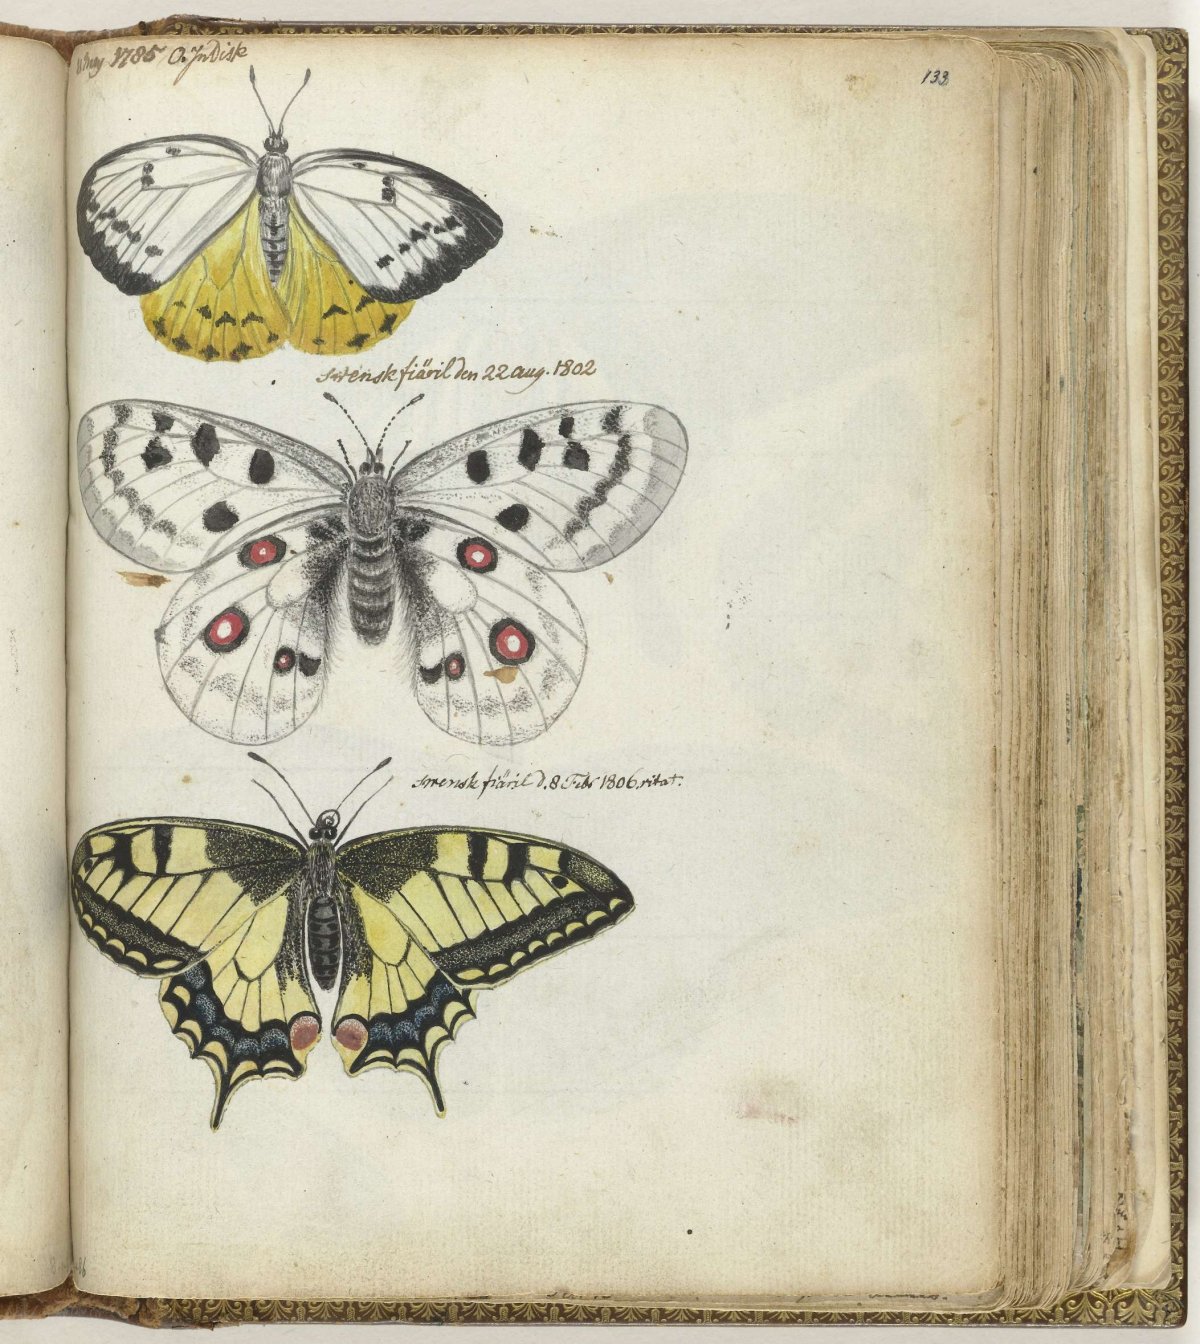 Javanese and Swedish butterflies, Jan Brandes, 1785 - 1806